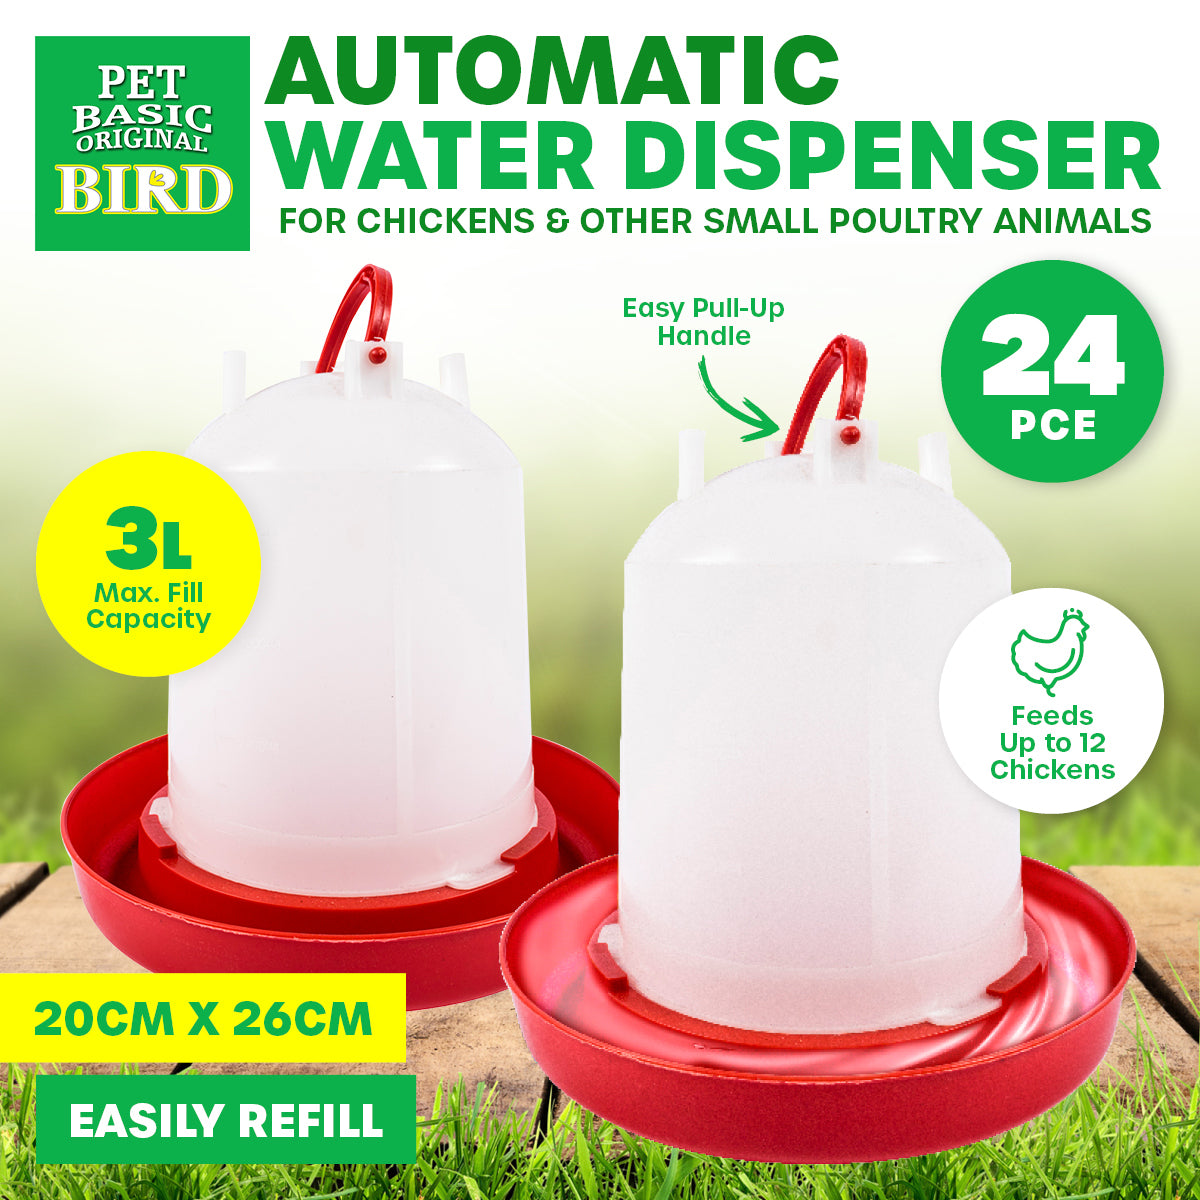 Pet Basic 24PCE Automatic Poultry Water Dispenser 3L Carry Handle 20 x 26cm